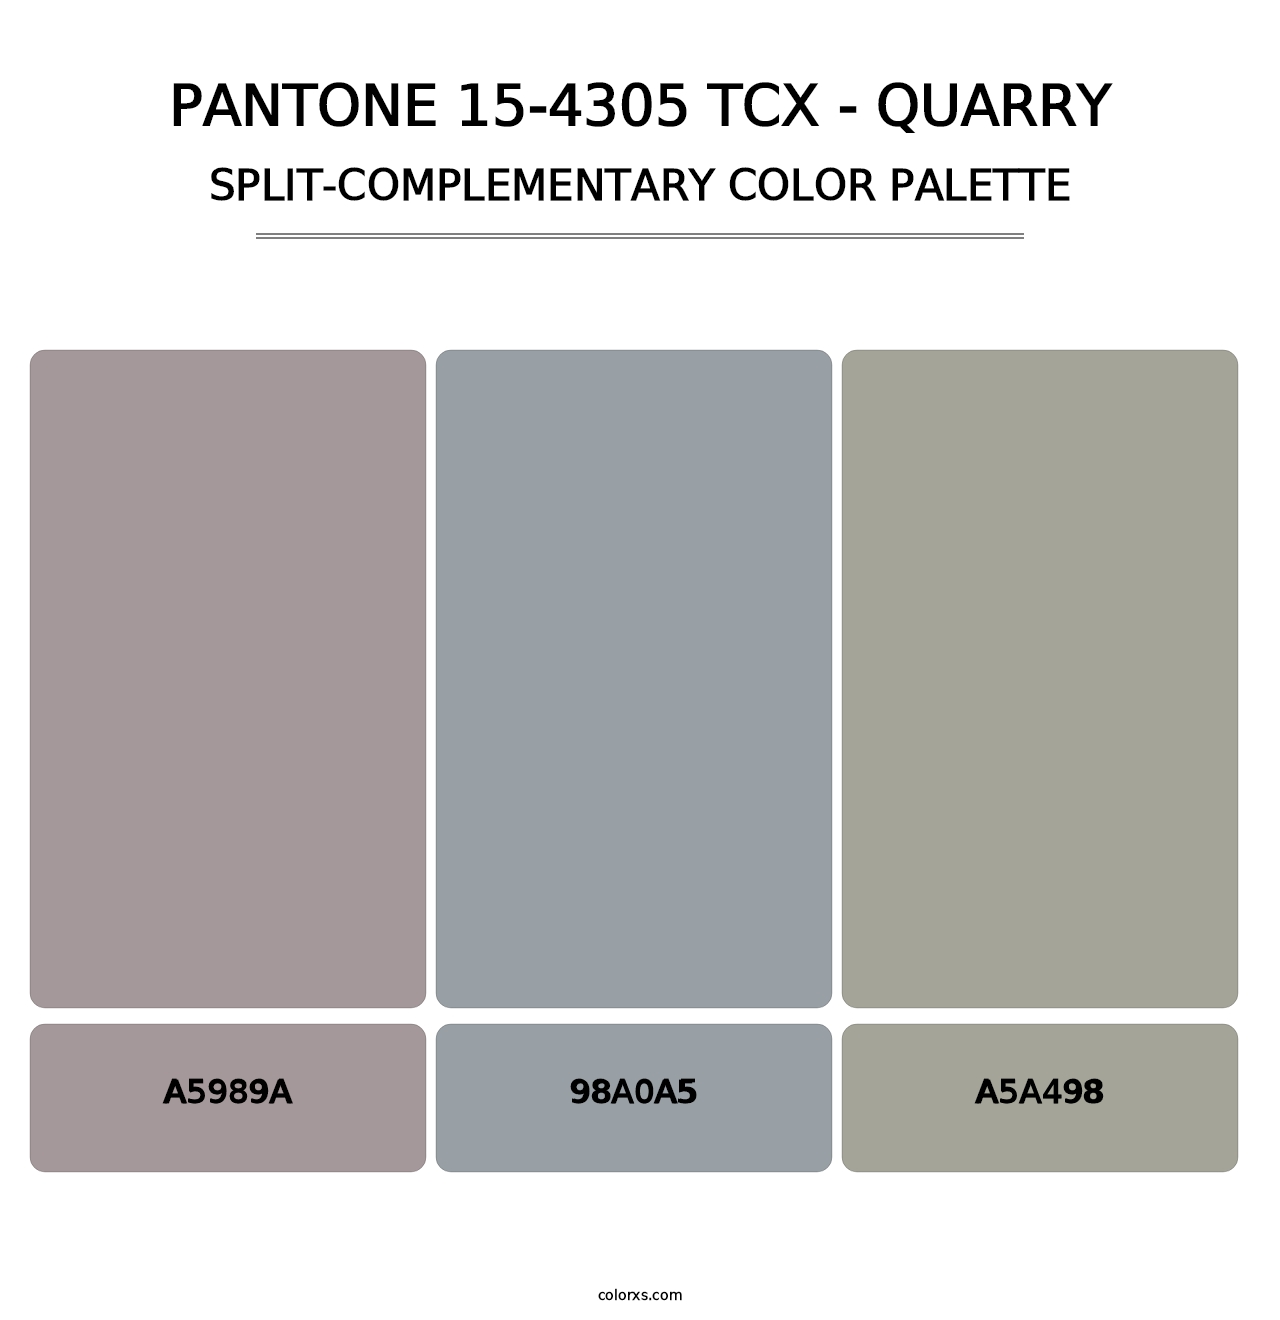 PANTONE 15-4305 TCX - Quarry - Split-Complementary Color Palette